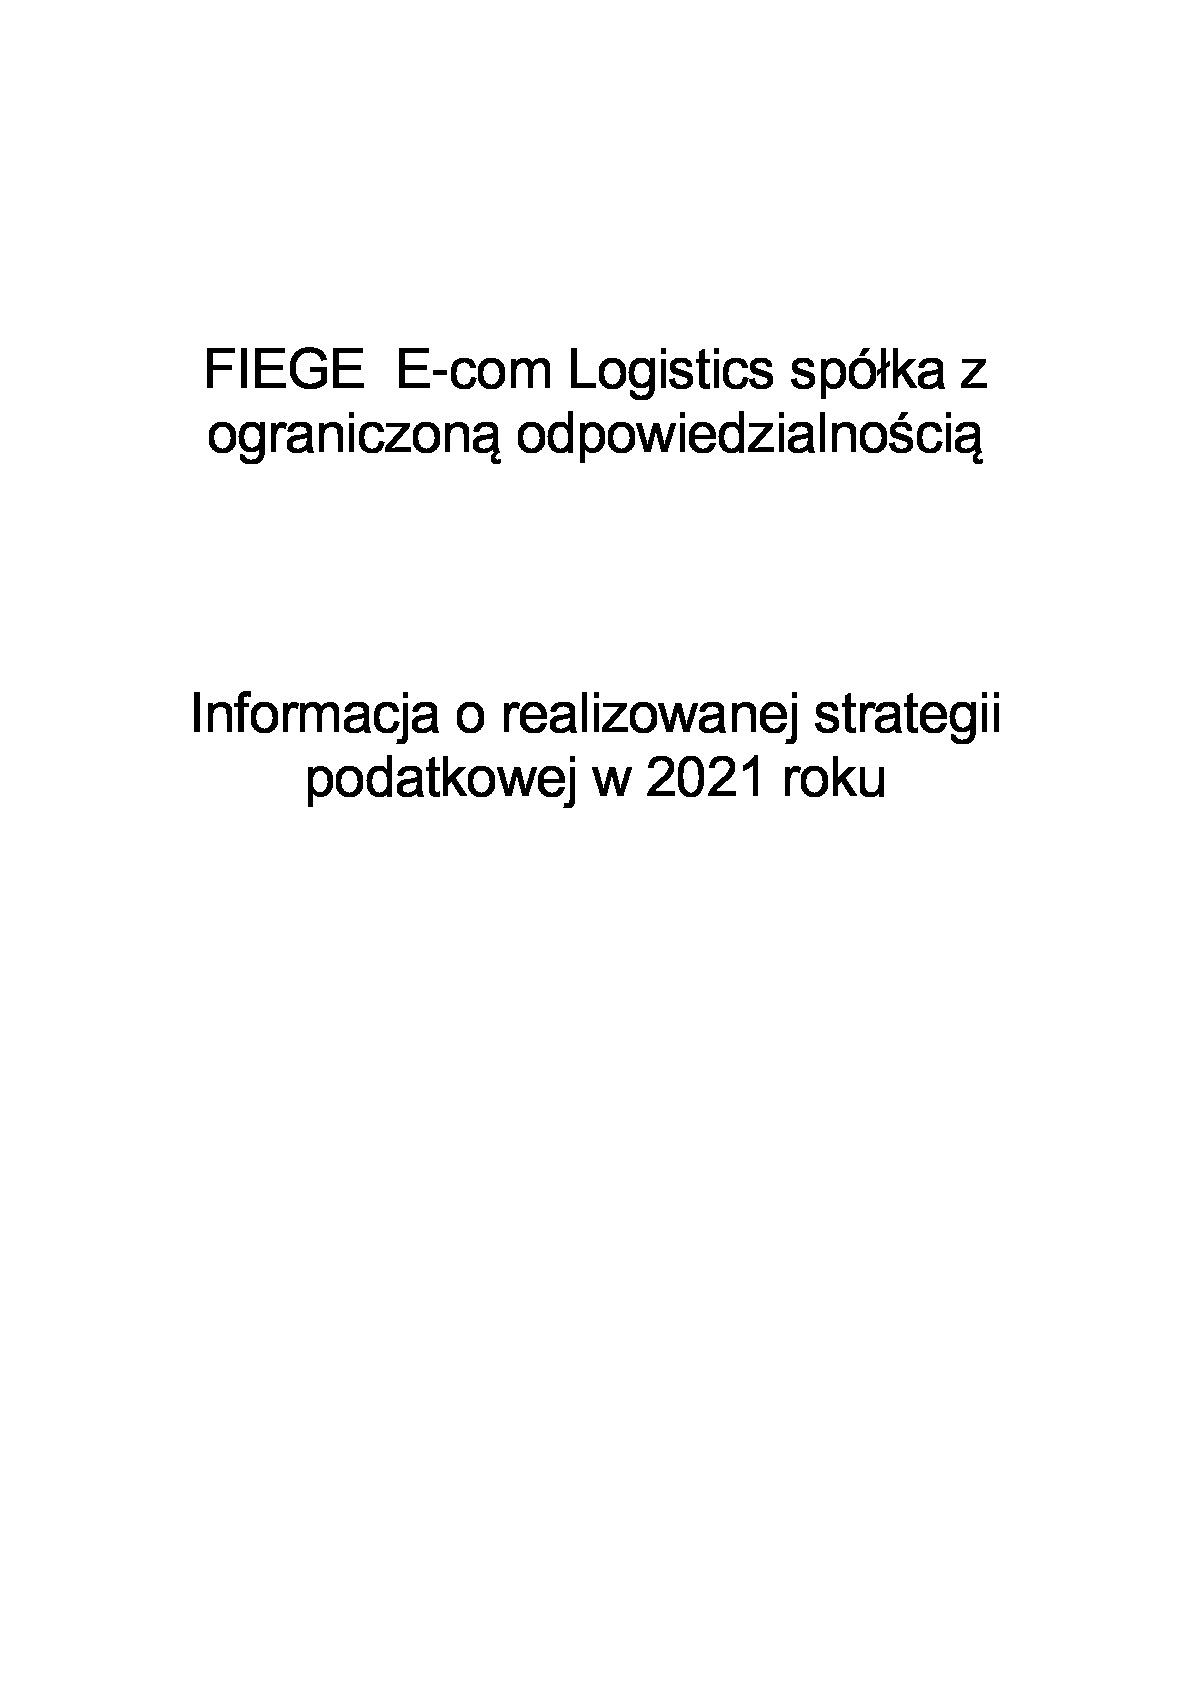 informacja-o-strategii_fiege-e-com-logistics-2021.pdf